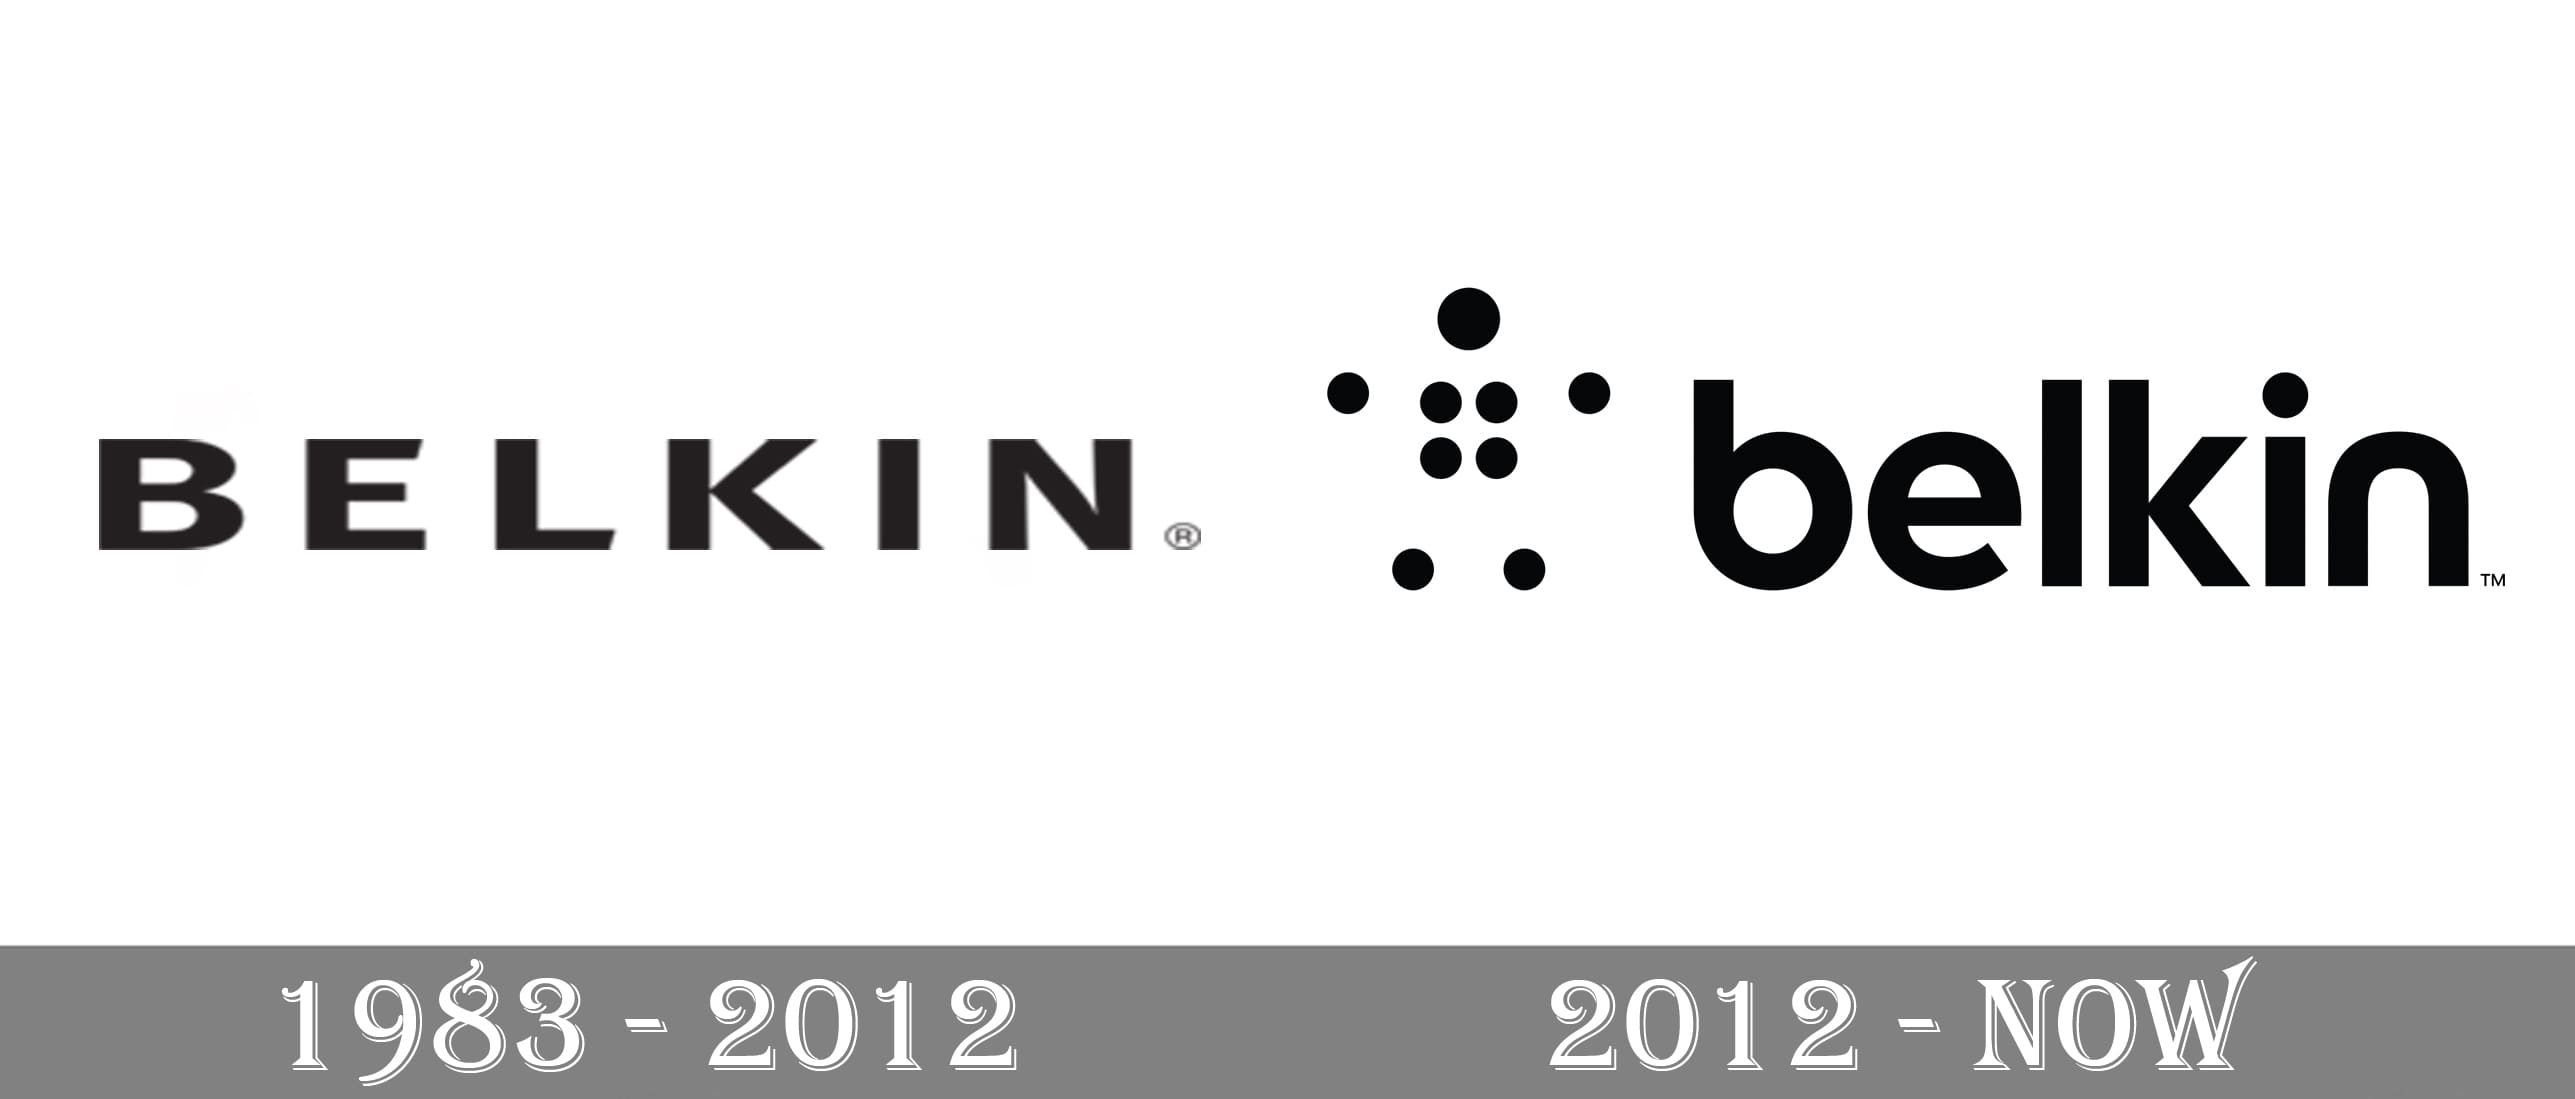 Belkin-Logo-history